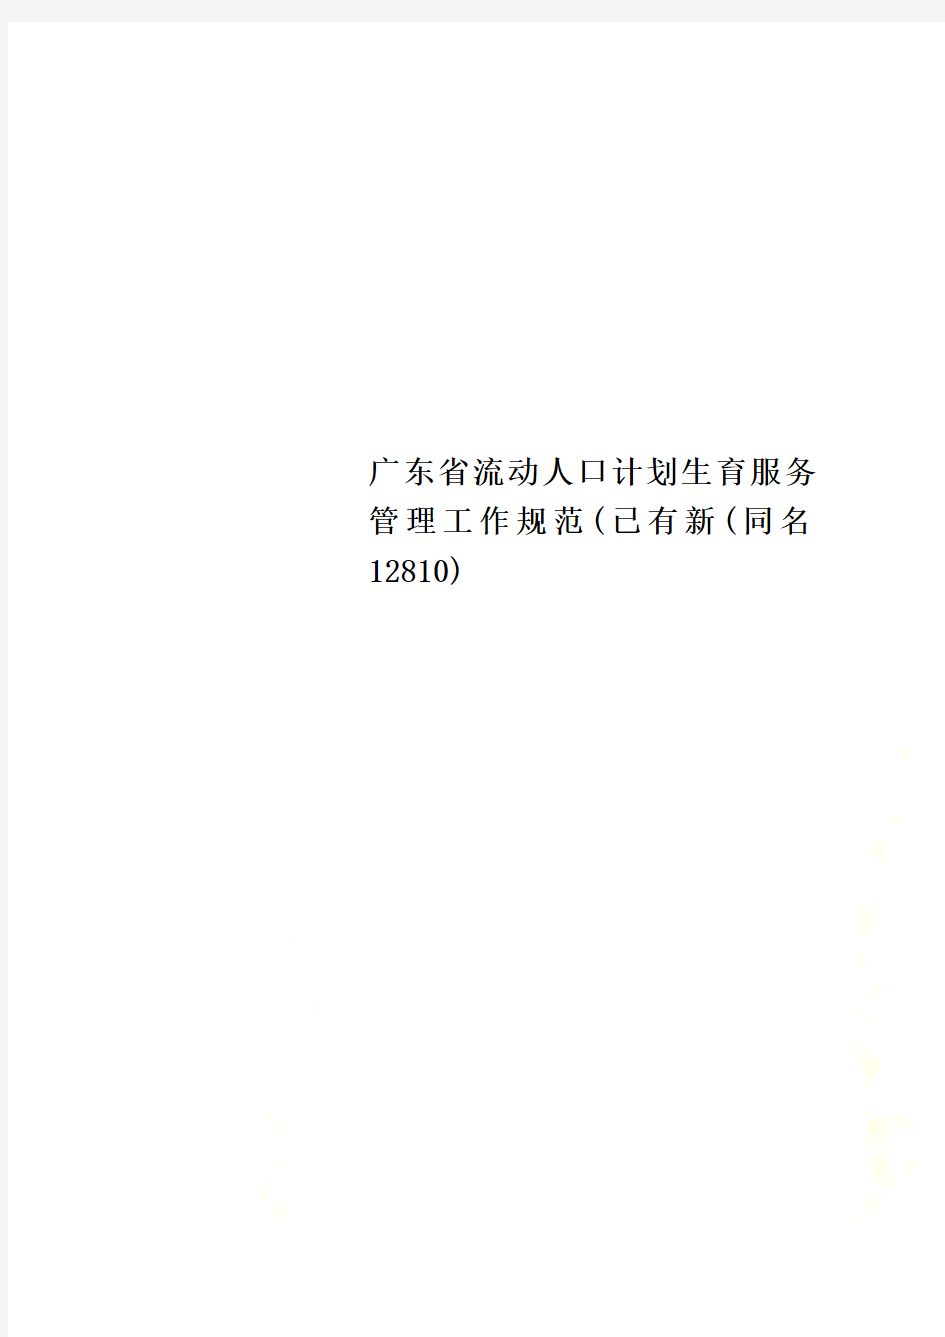 广东省流动人口计划生育服务管理工作规范(已有新(同名12810)